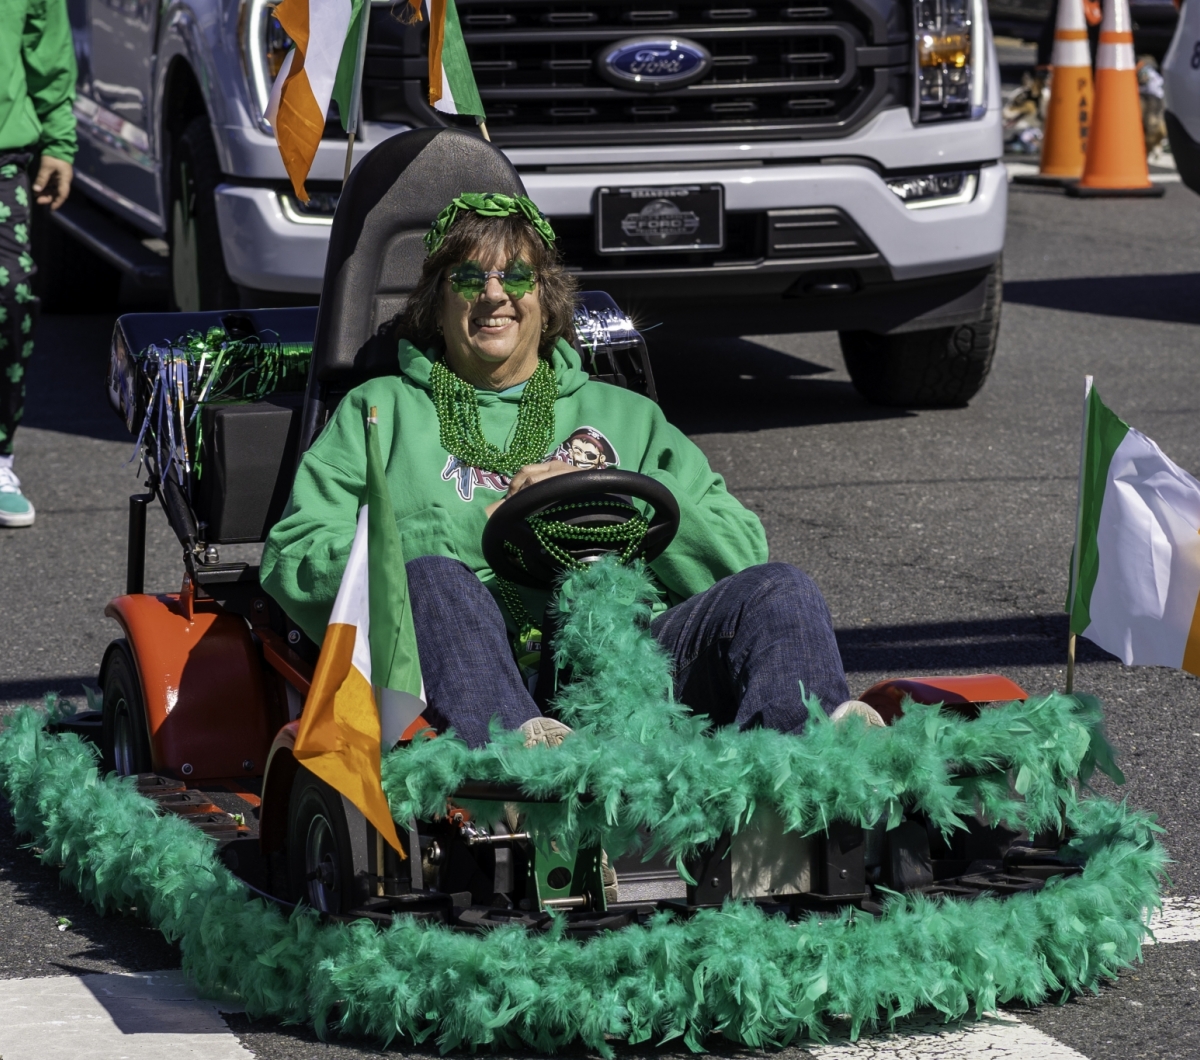 Lady riding a St. Patrick's Day go kart